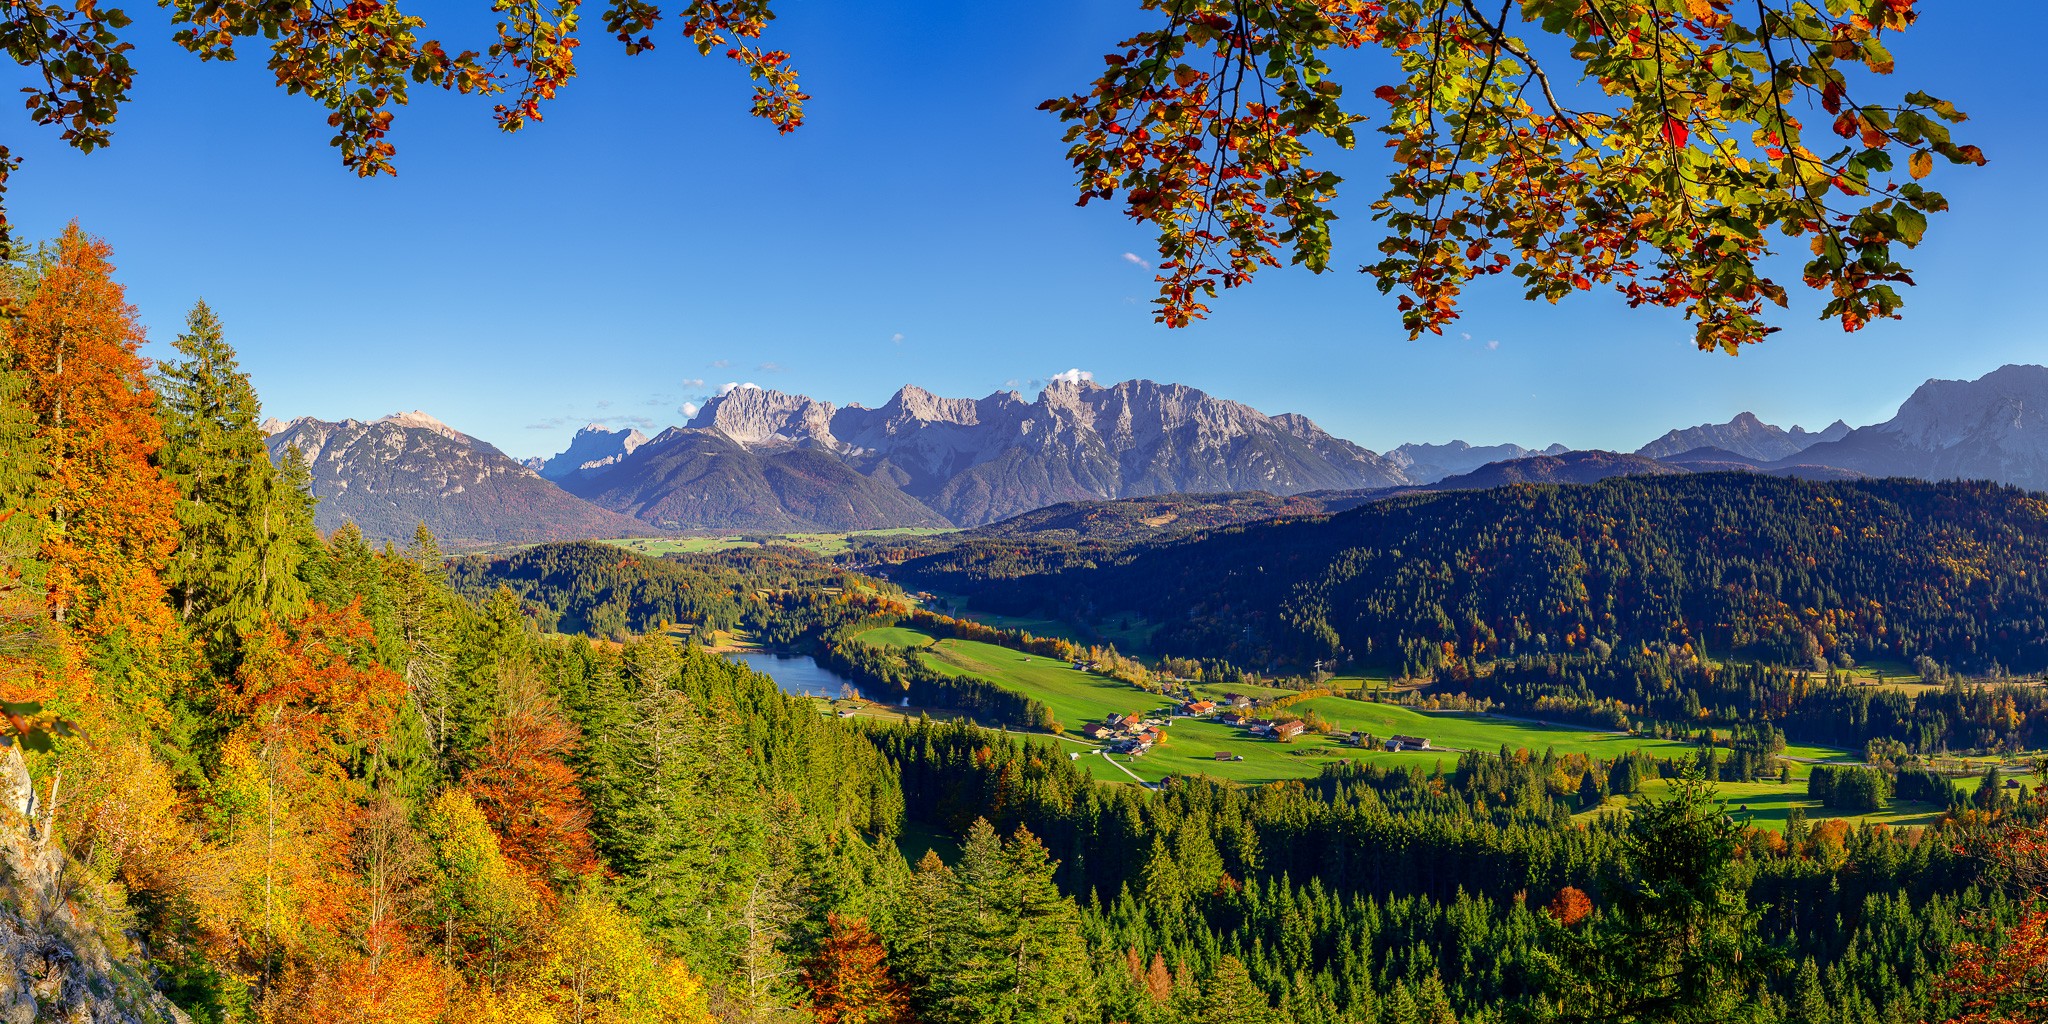 Das bunte Herbstlaub bringt Farbe in die Wälder zwischen Gerold, Klais und Mittenwald.